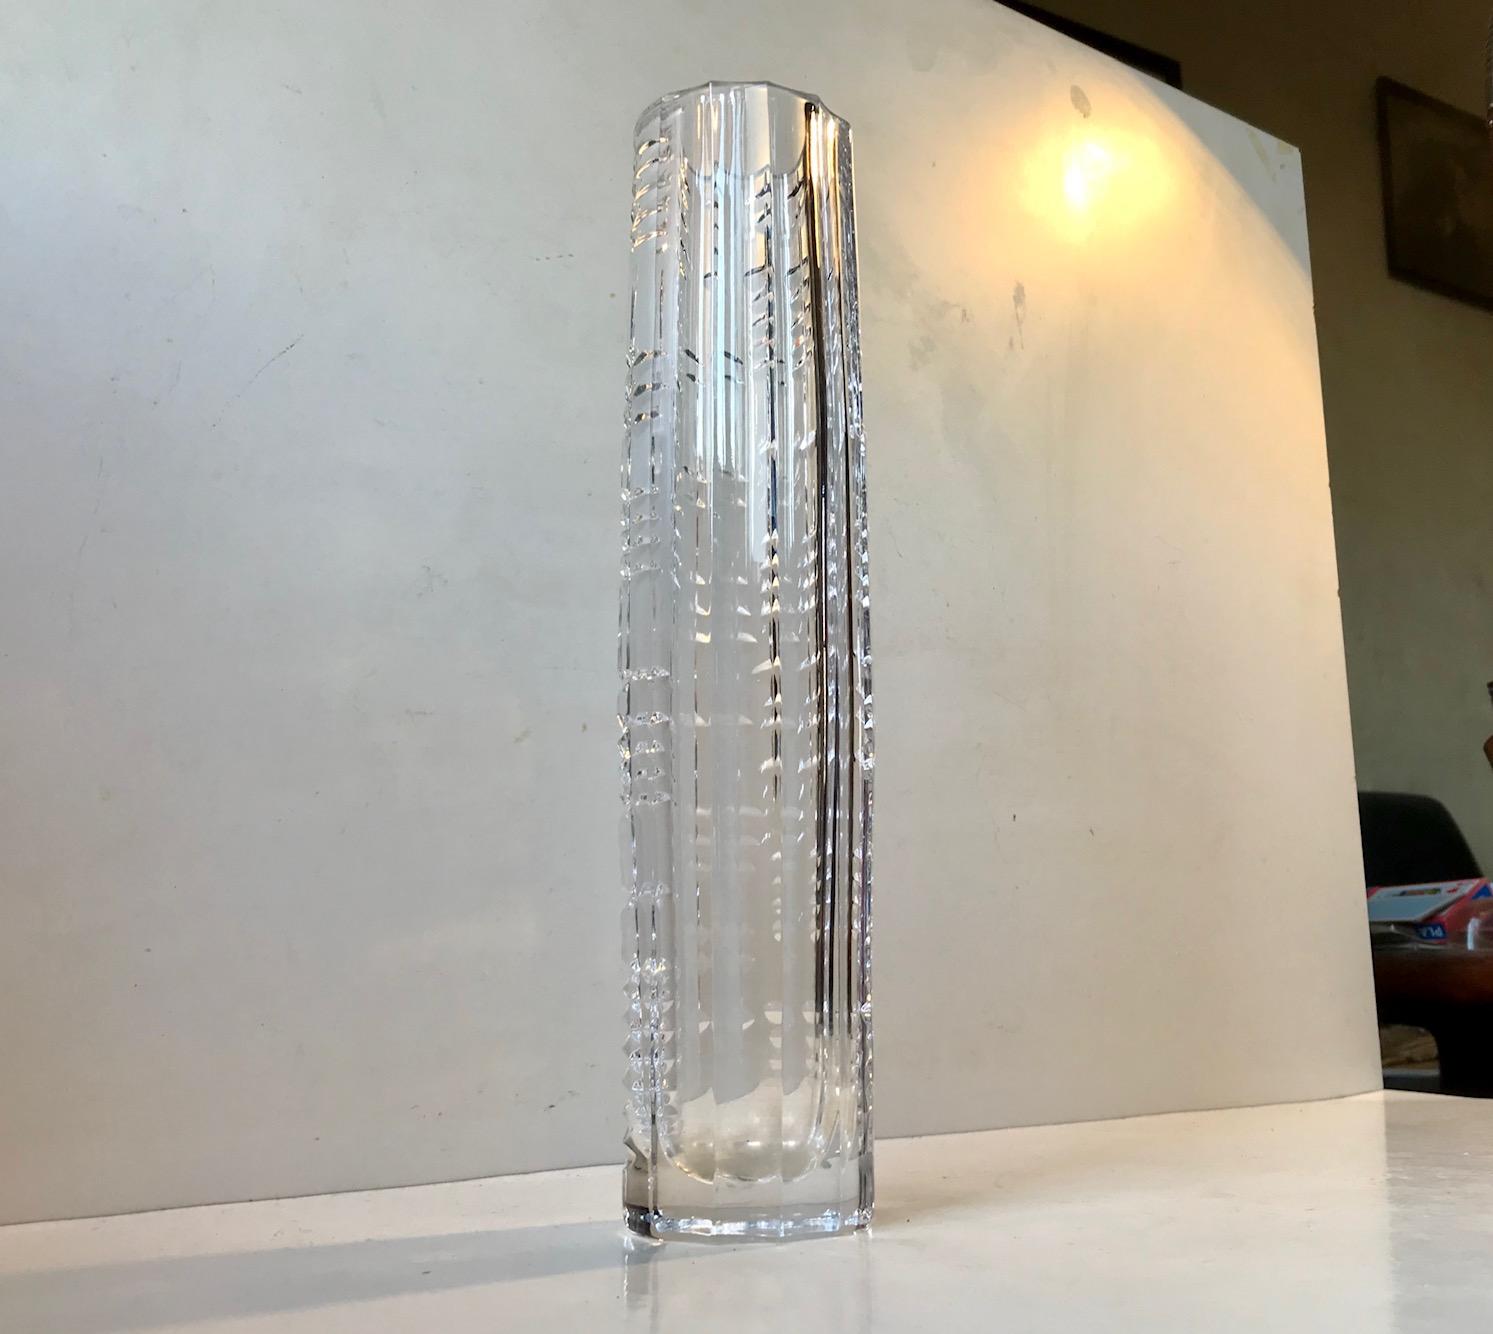 Eine torpedoförmige Vase aus geschliffenem Kristall, vermutlich von Kosta Boda oder Orrefors. Die Vase zeichnet sich durch verschiedene Techniken aus. Am auffälligsten ist die Mischung aus vertikalen Rippen auf der einen Seite und einem